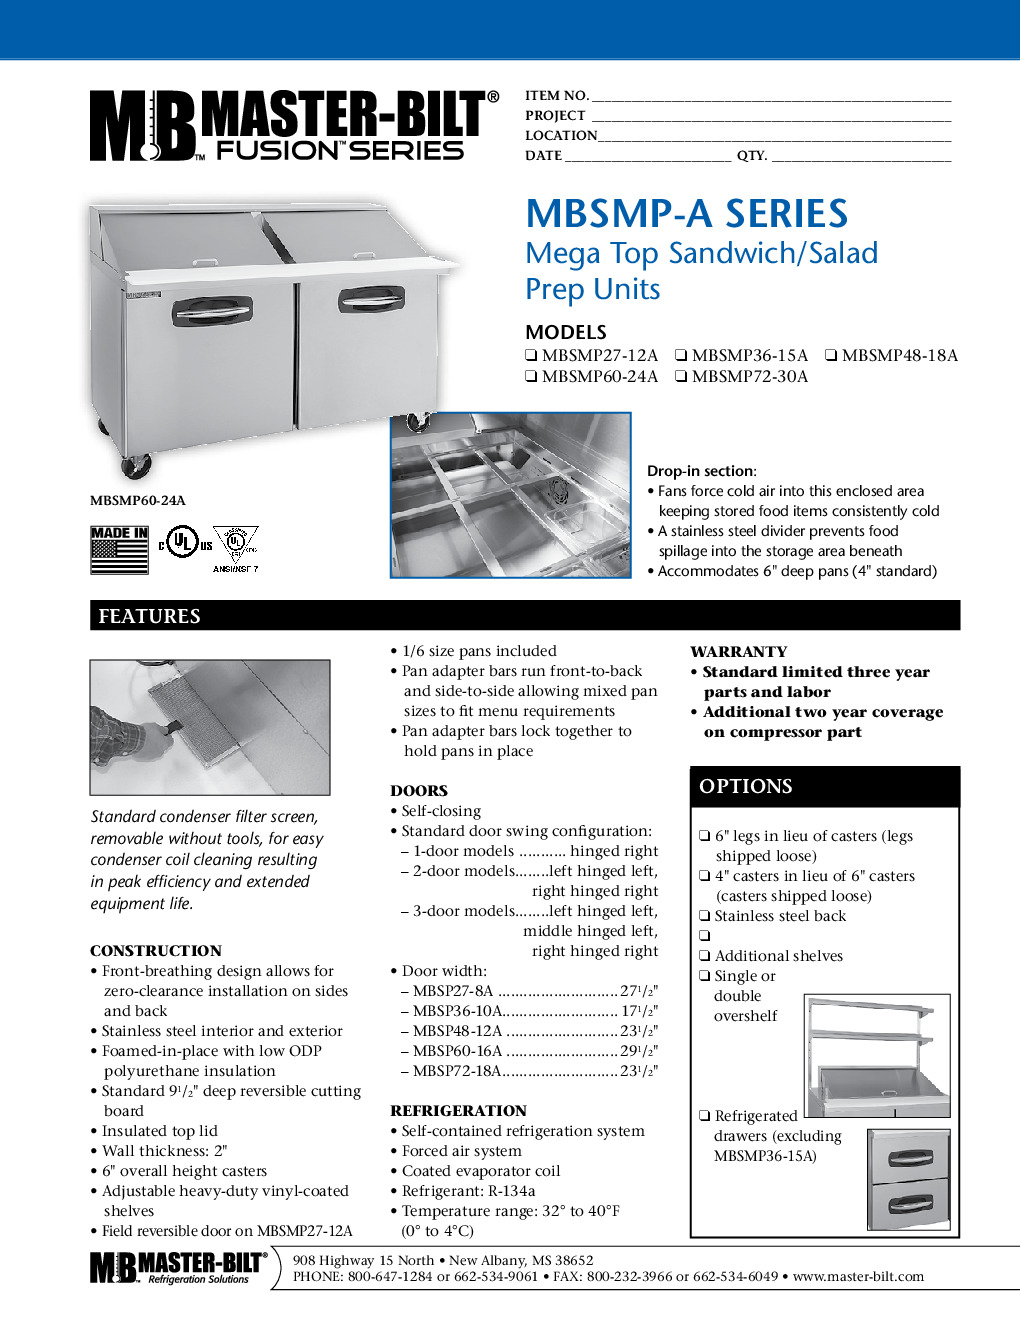 Master-Bilt MBSMP72-30 Mega Top Refrigerated Prep Table w/ 3 Doors, 19.2 Cu Ft, (30) 1/6 Pans